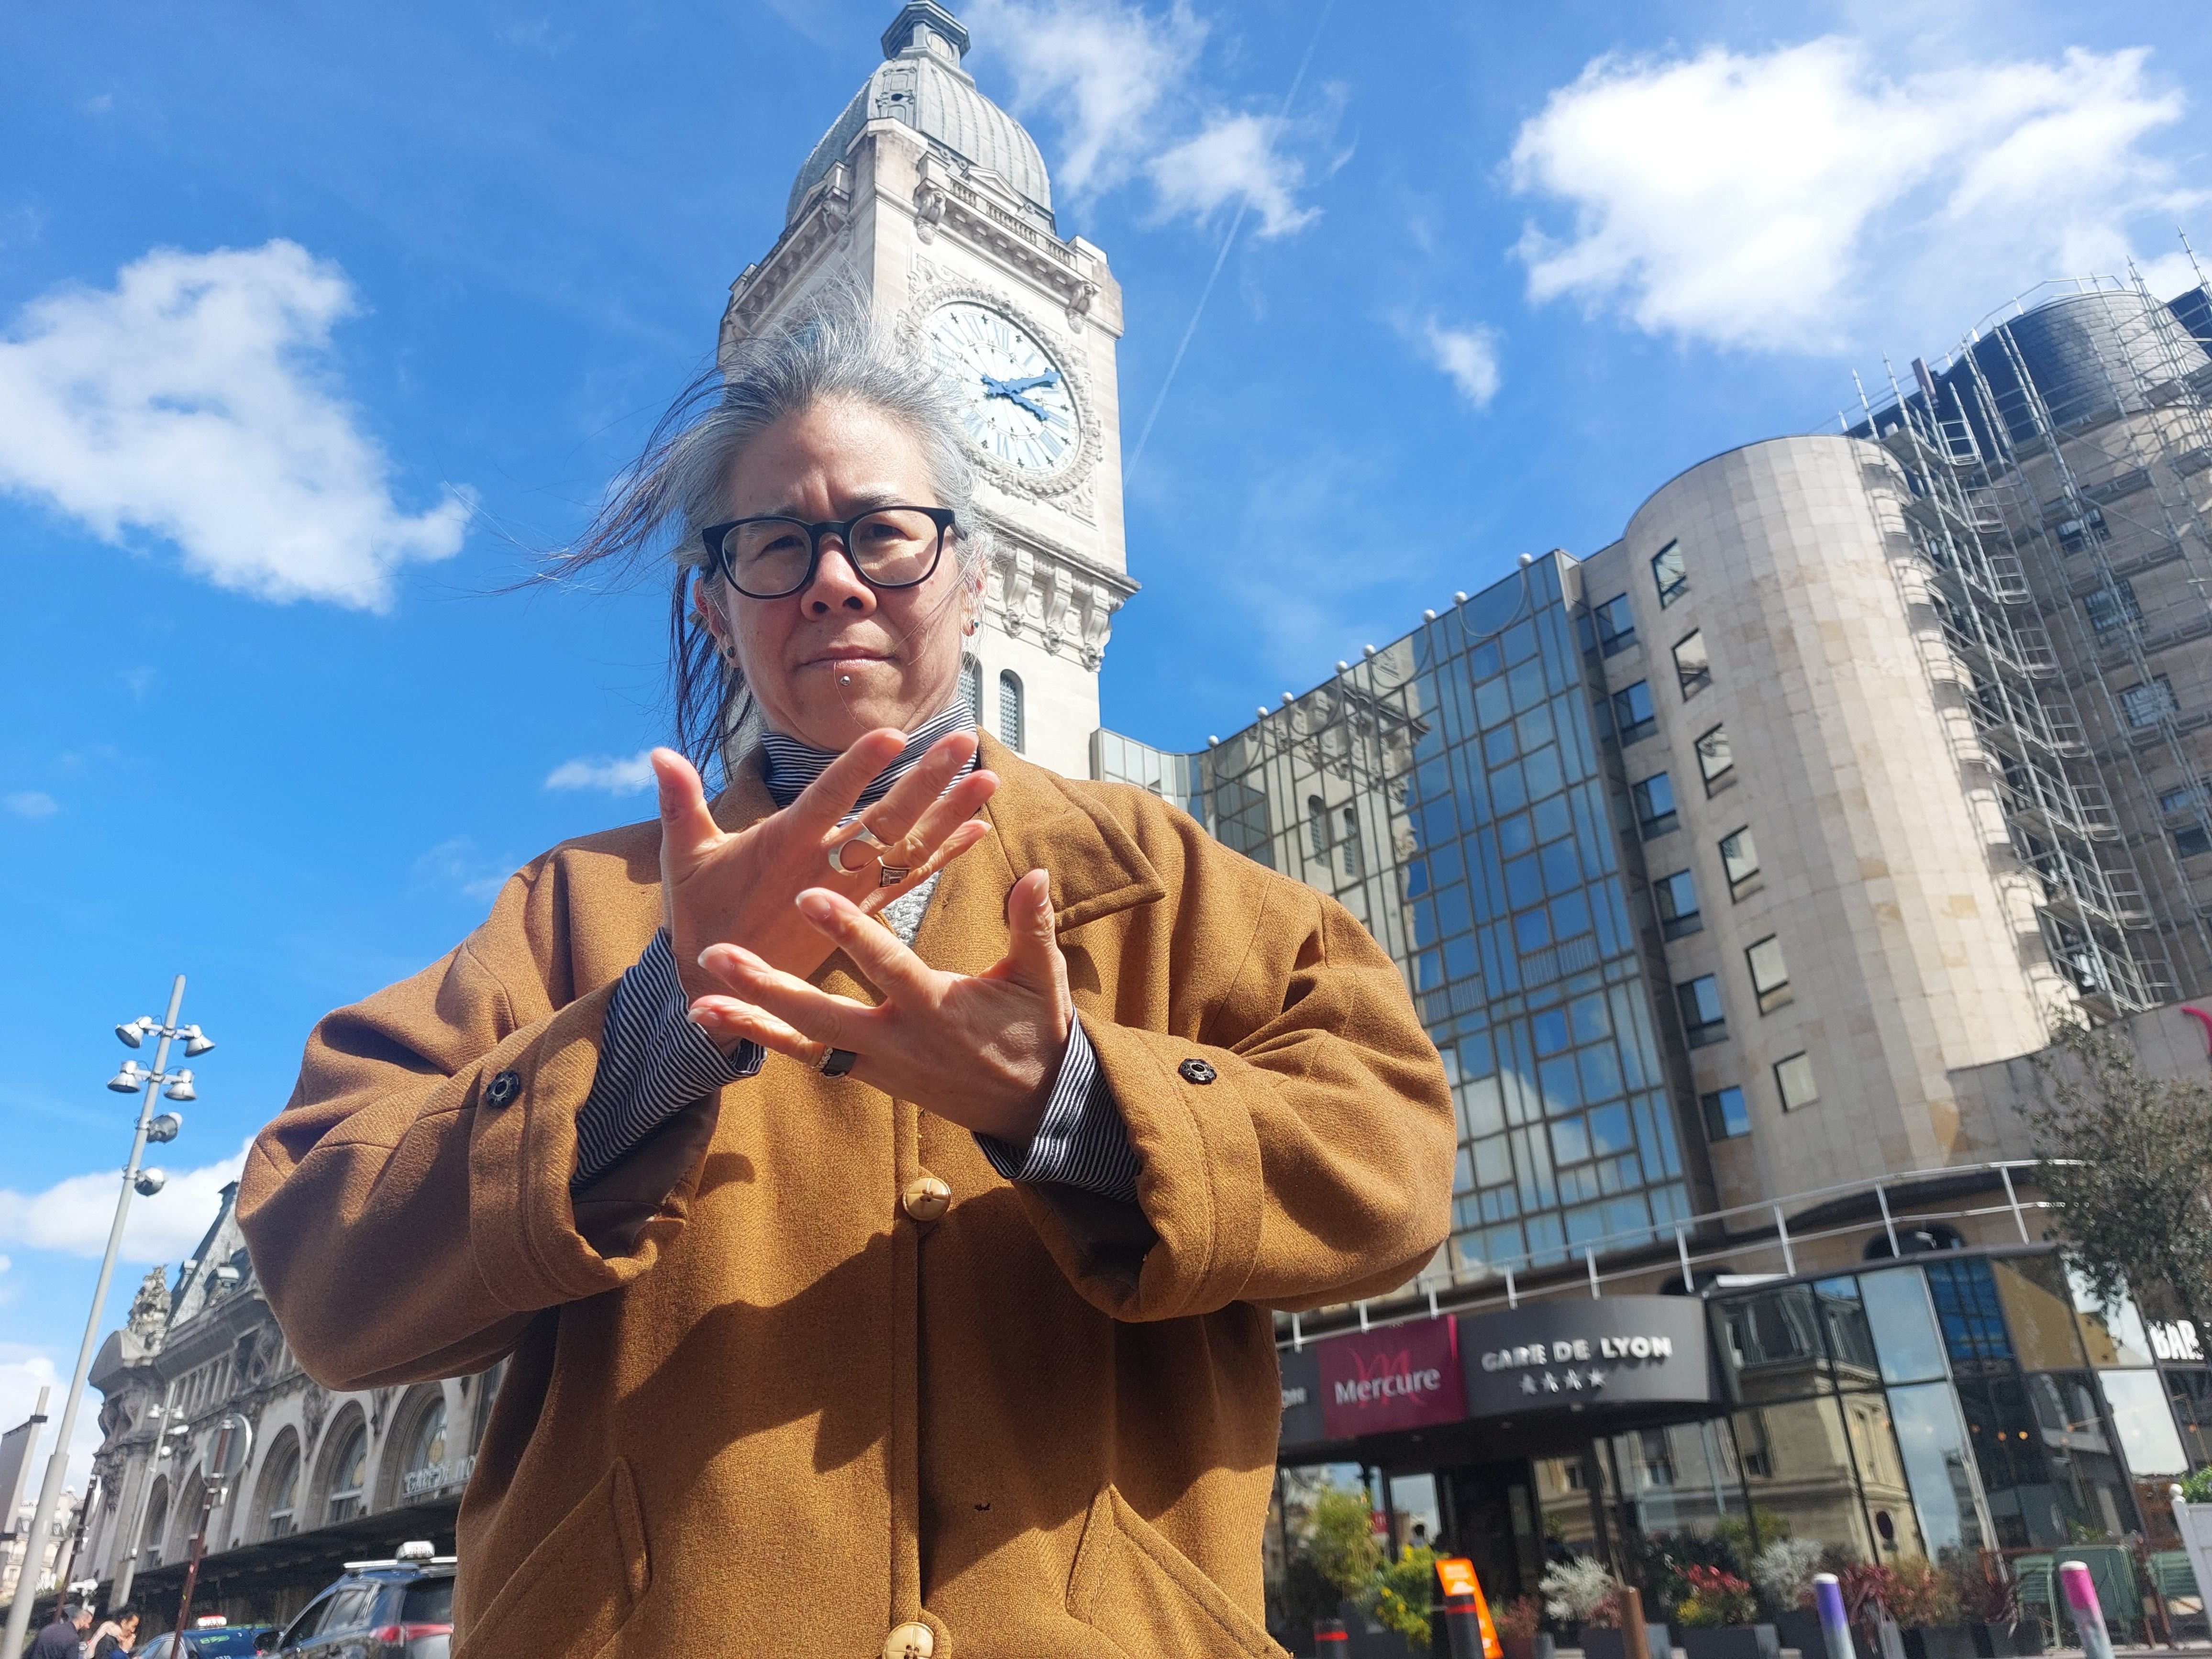 Paris (XIIe), le 4 avril. Shirley Tong On, vice-présidente des Femmes sourdes citoyennes et solidaires, traduit ici en langage des signes le slogan «Libérons la parole». LP/Denis Courtine